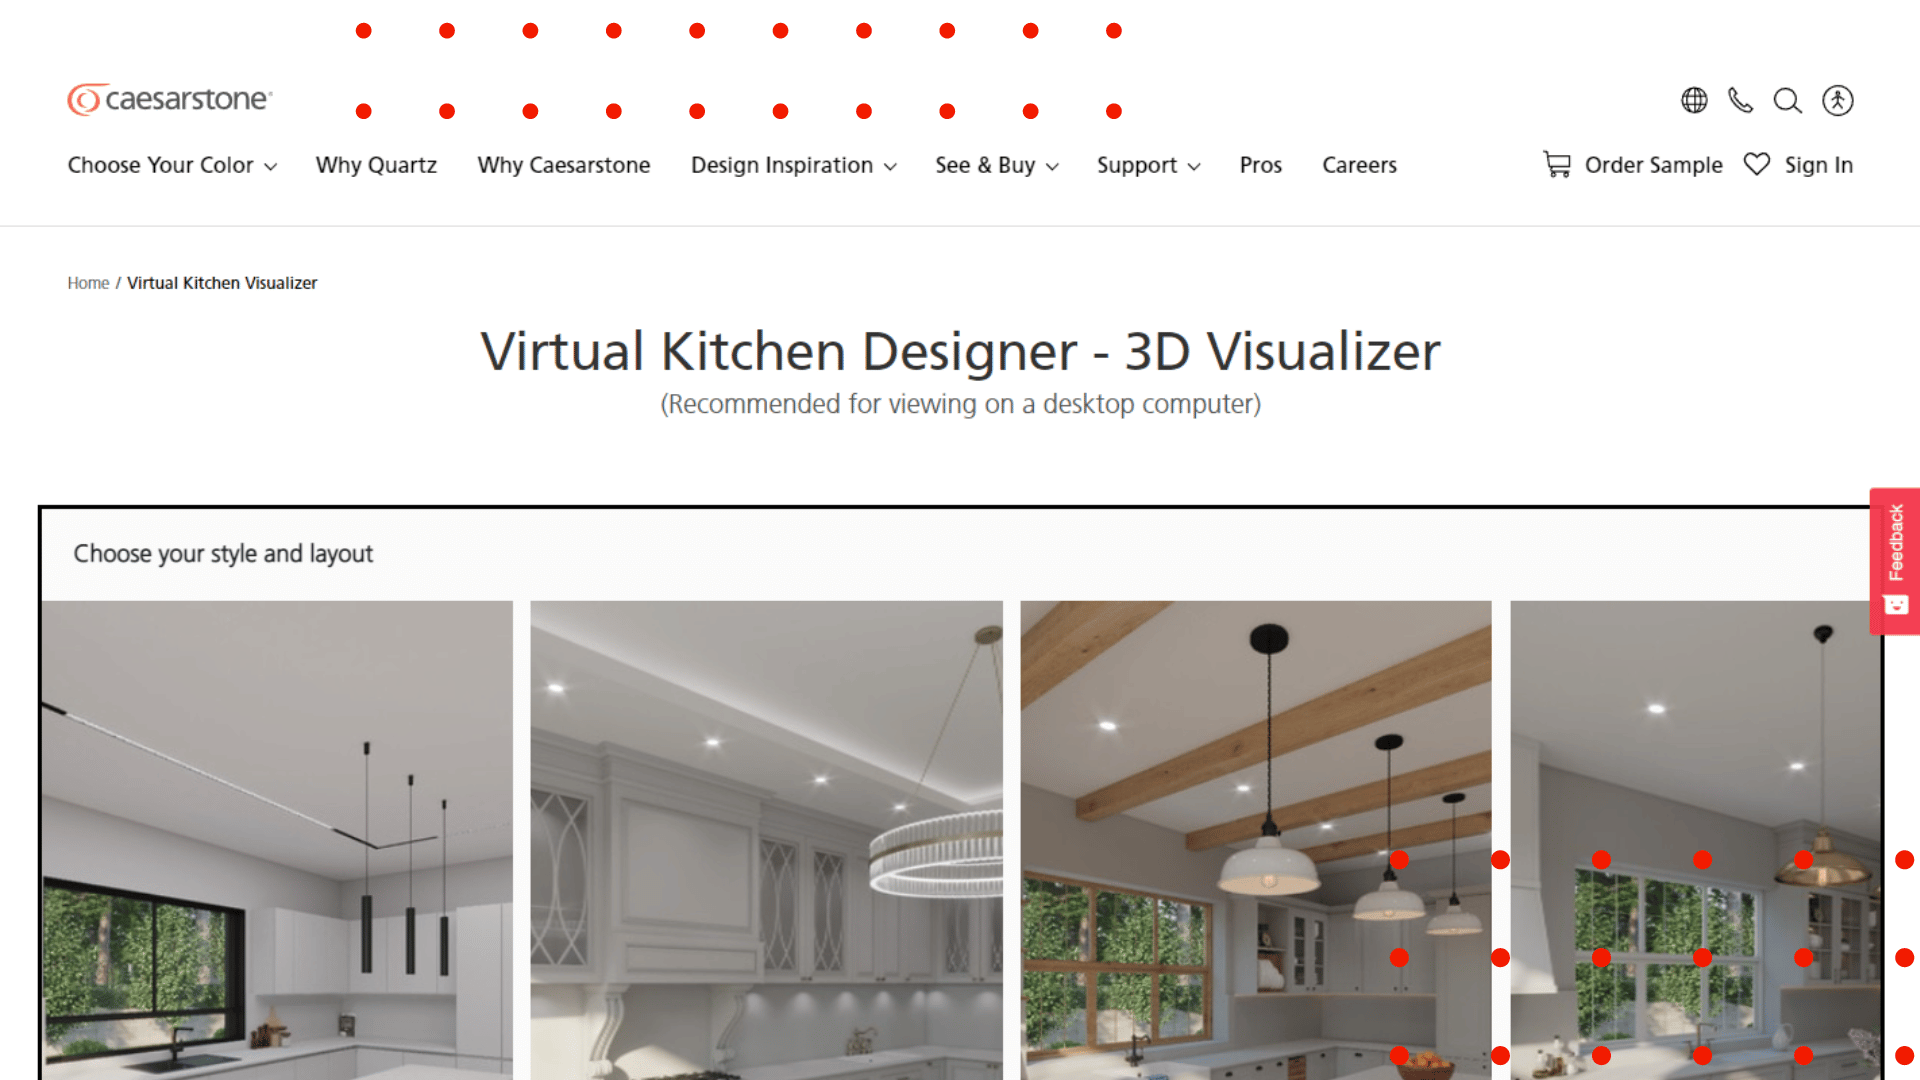 Caesarstone Kitchen Visualizer Features